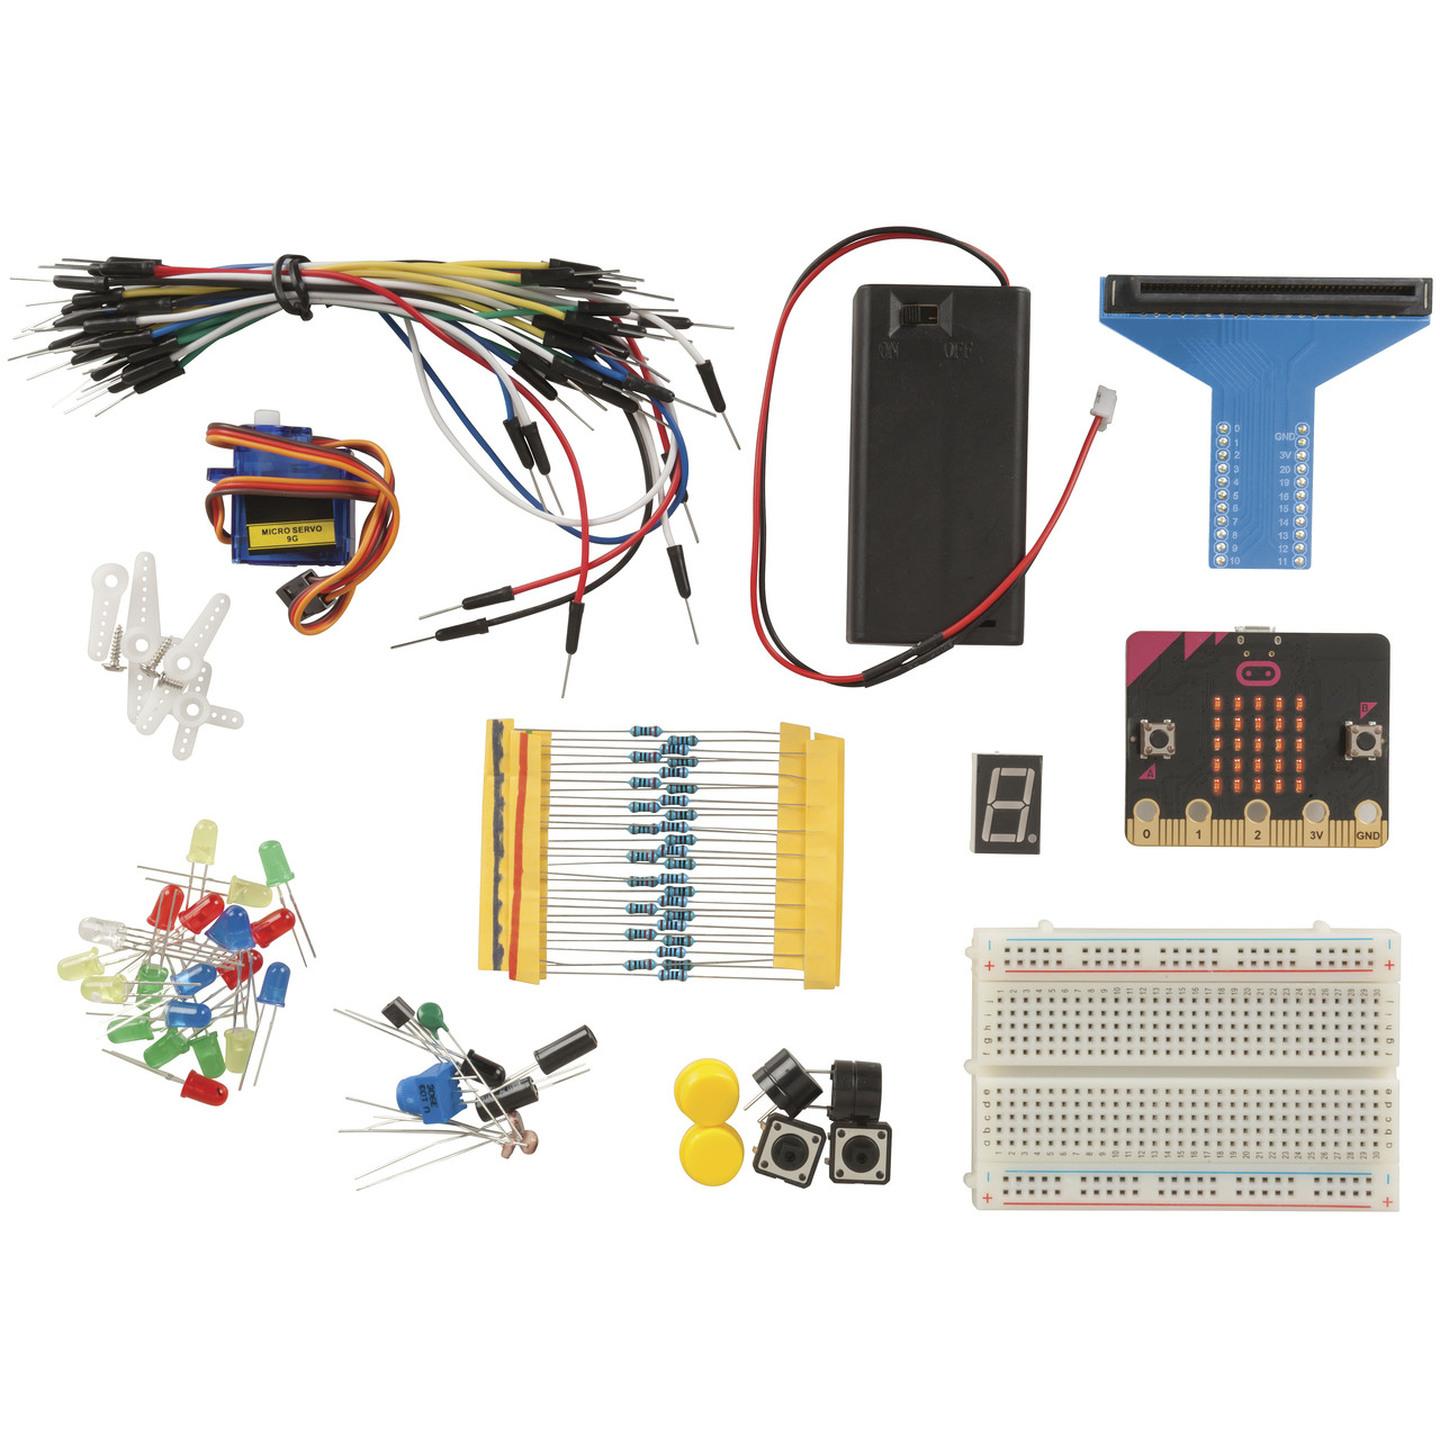 Duinotech BBC Micro:bit Starter Kit